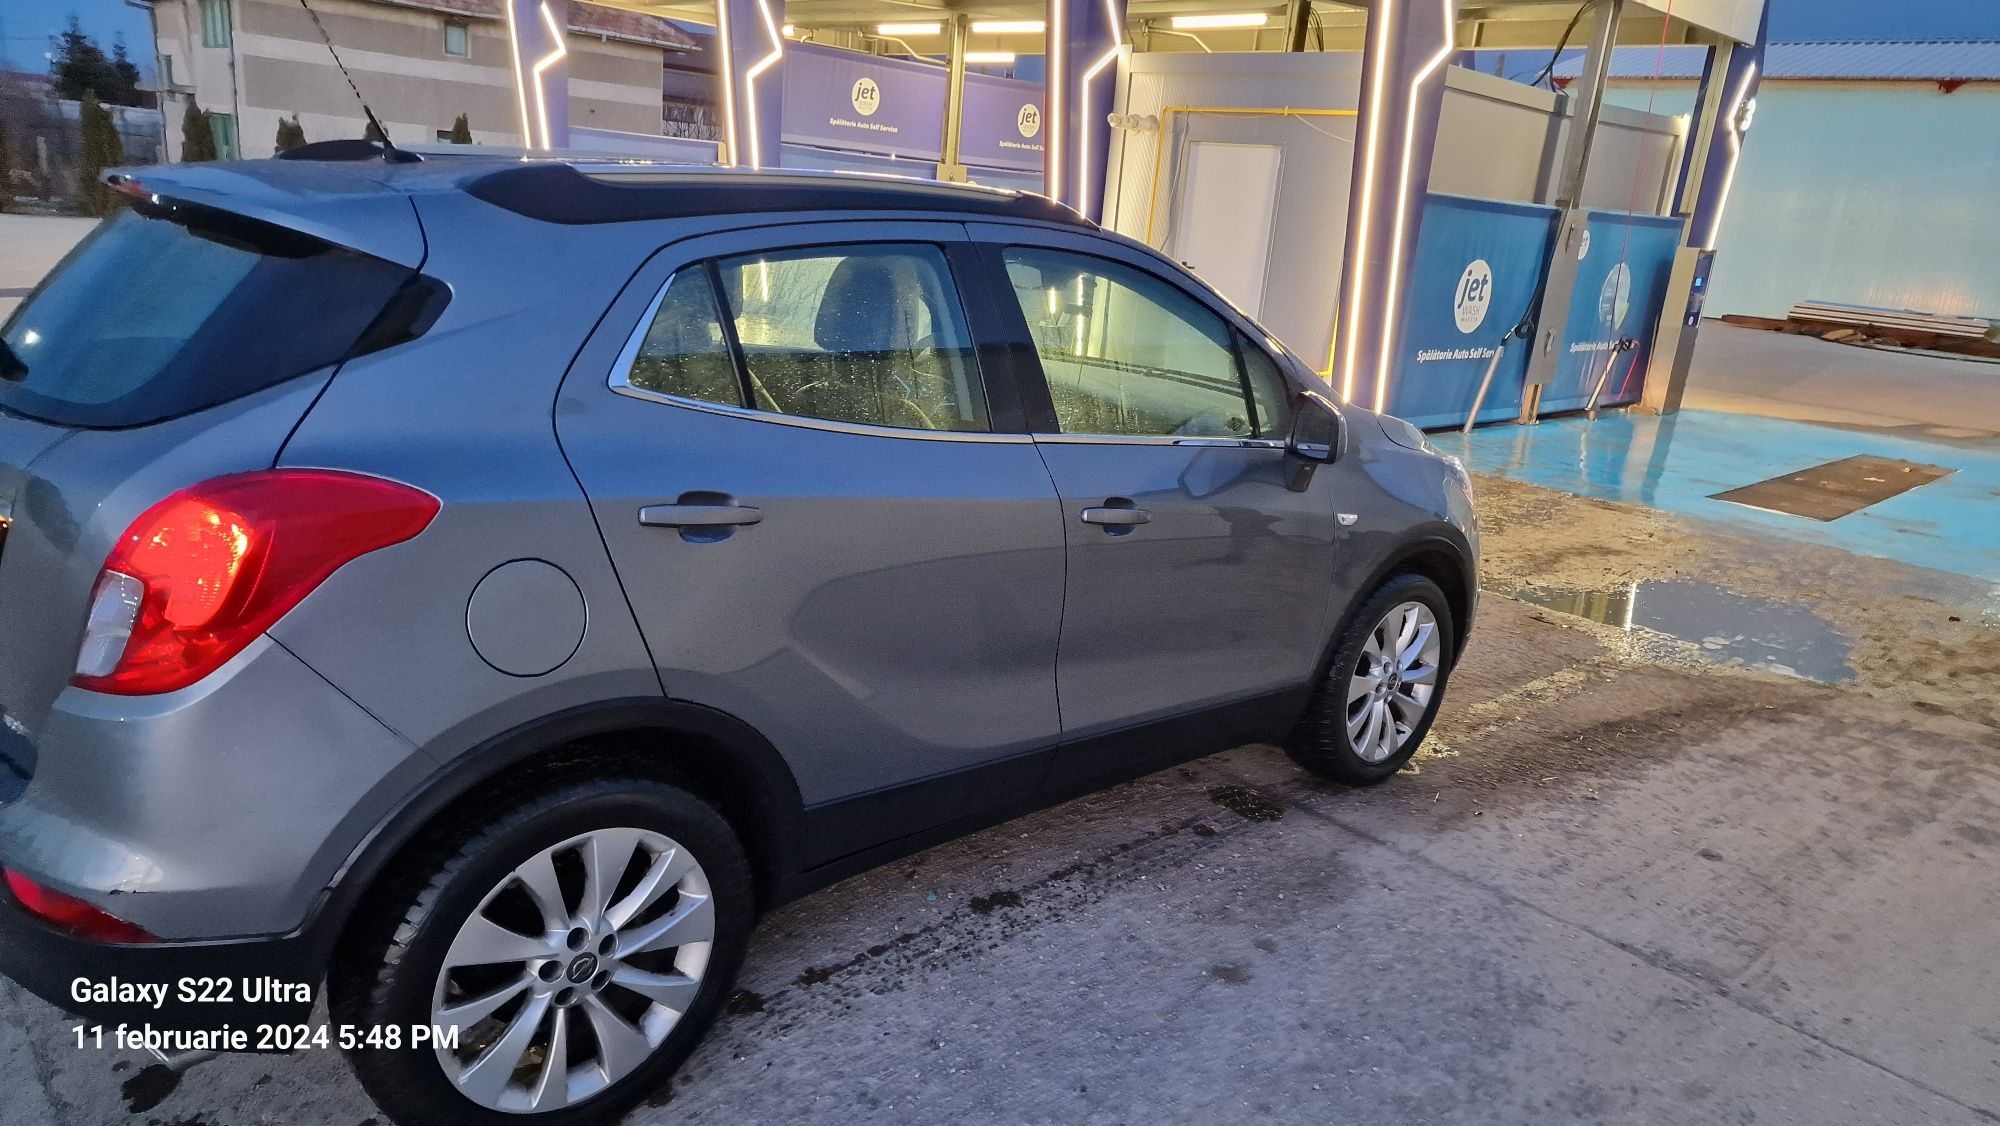 Opel Mokka X 2019